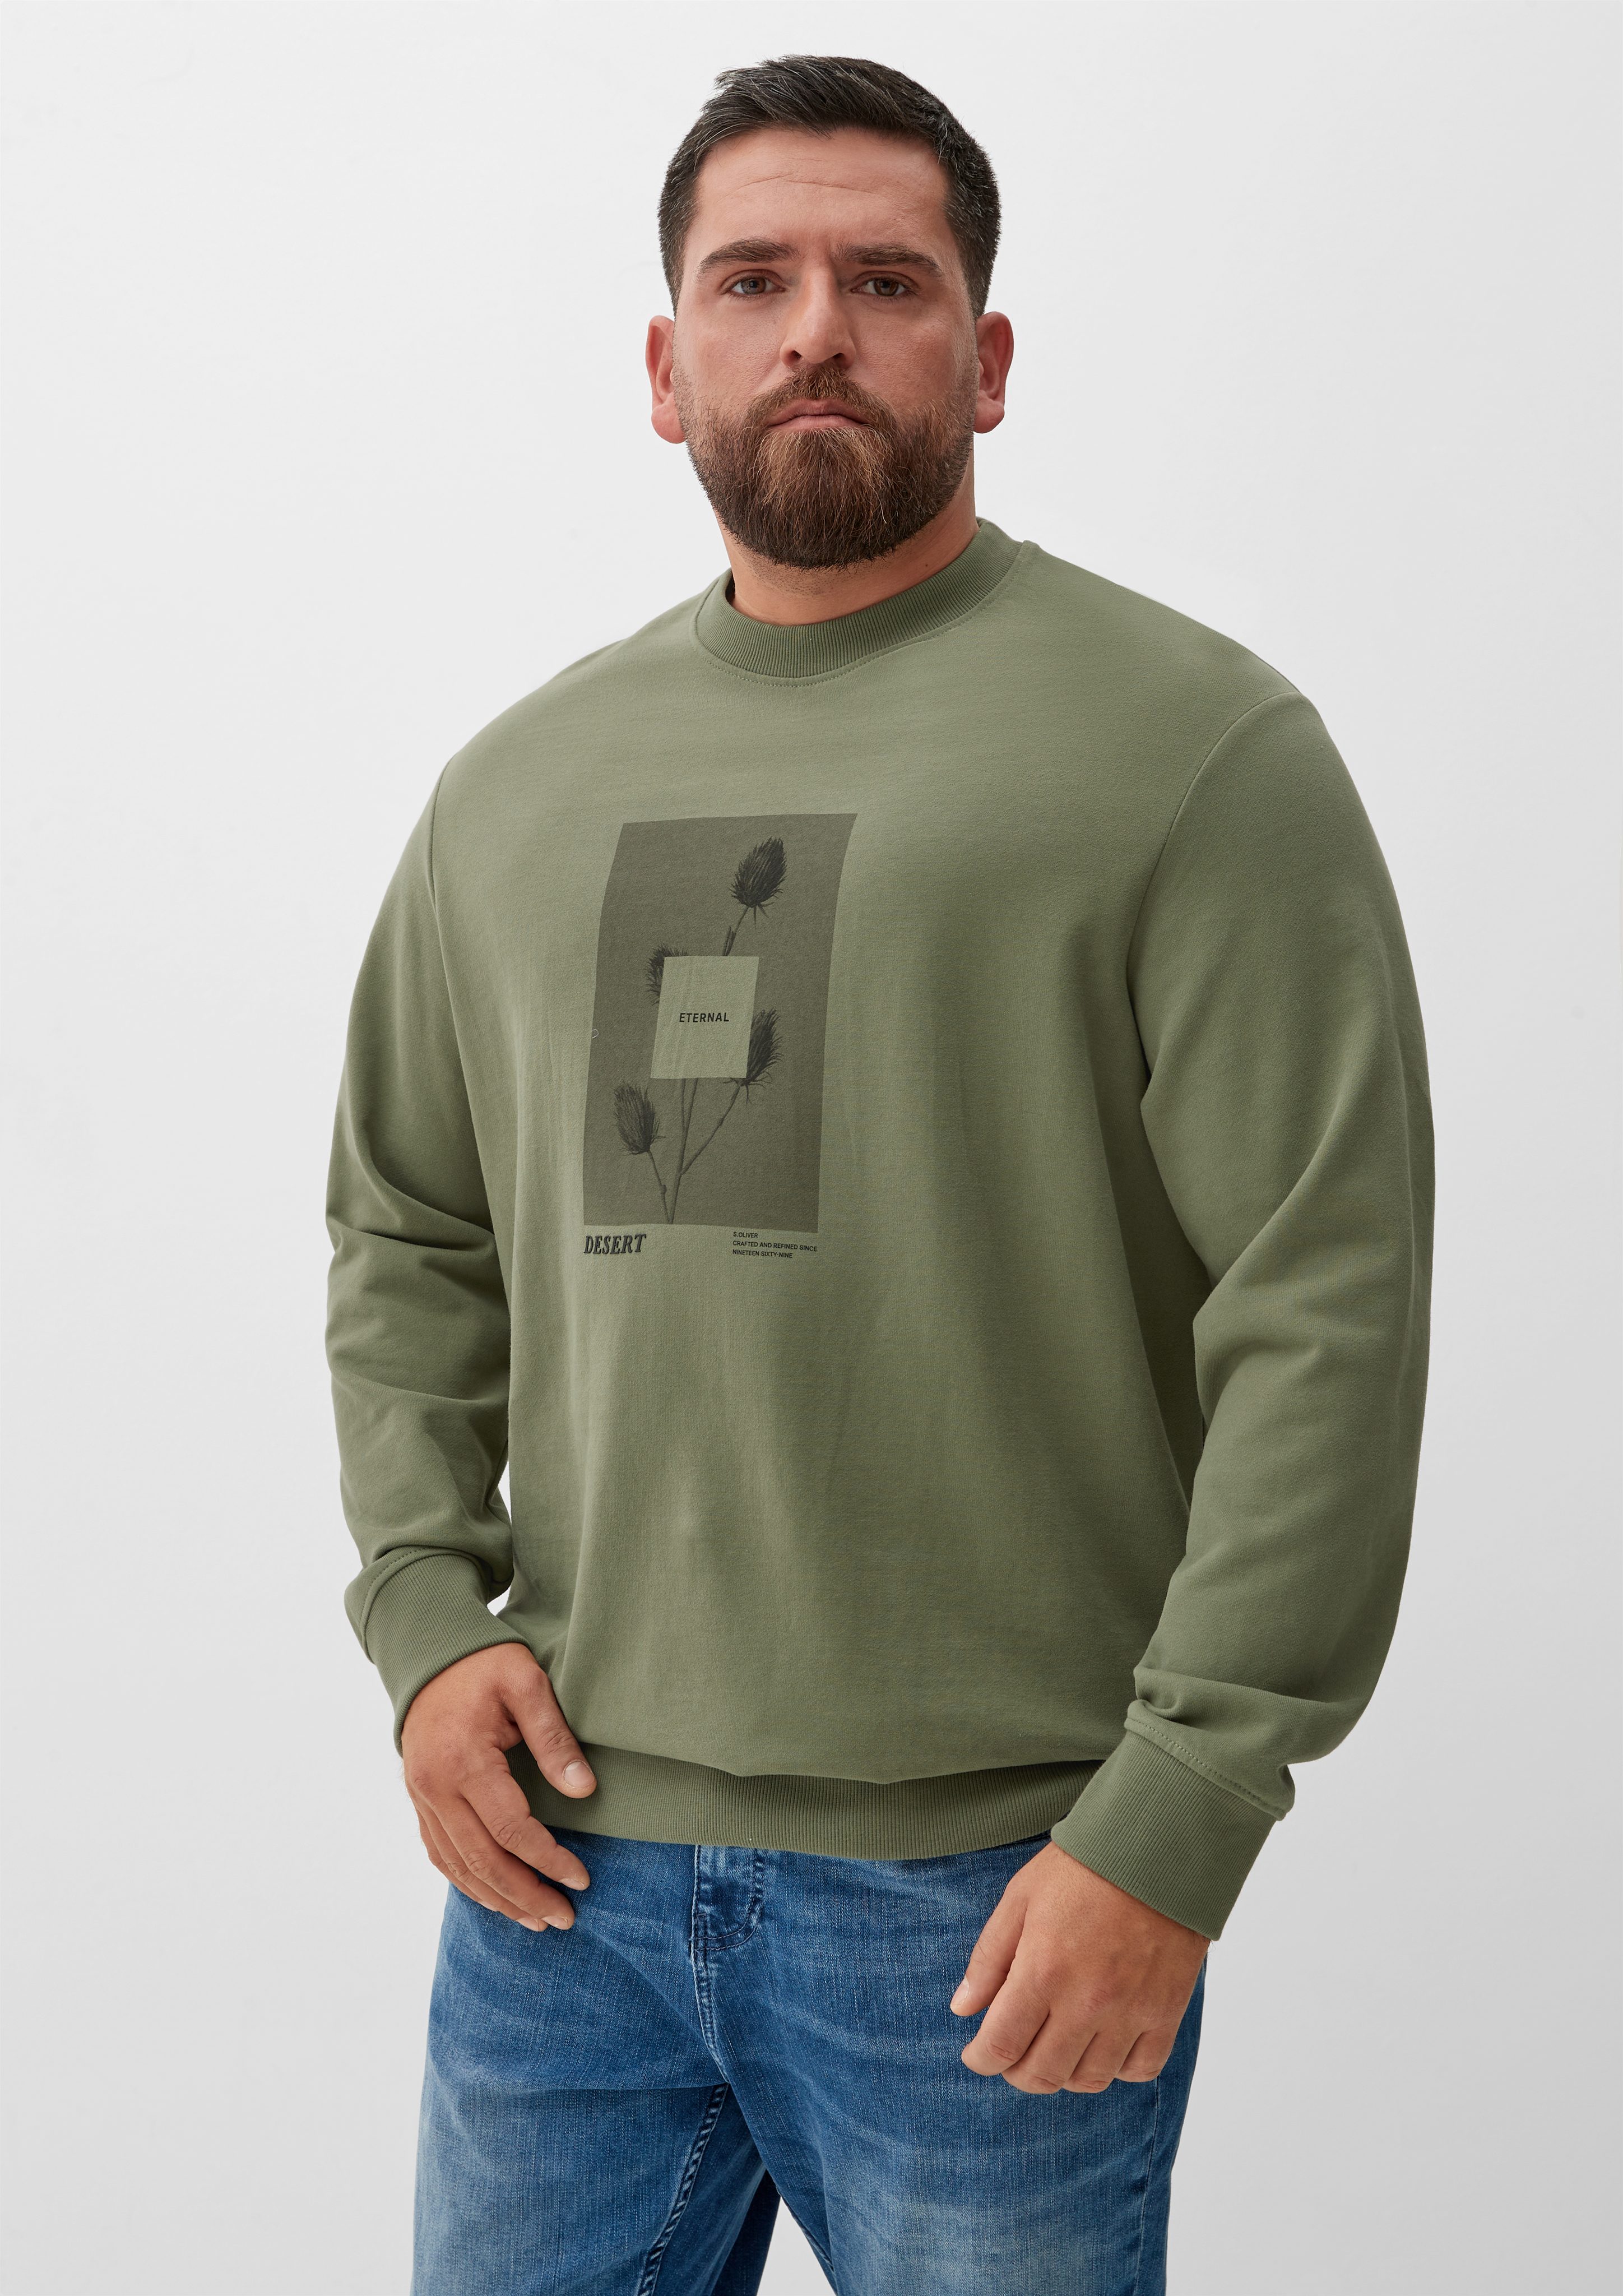 s.Oliver Sweatshirt Frontprint mit olivgrün Sweatshirt